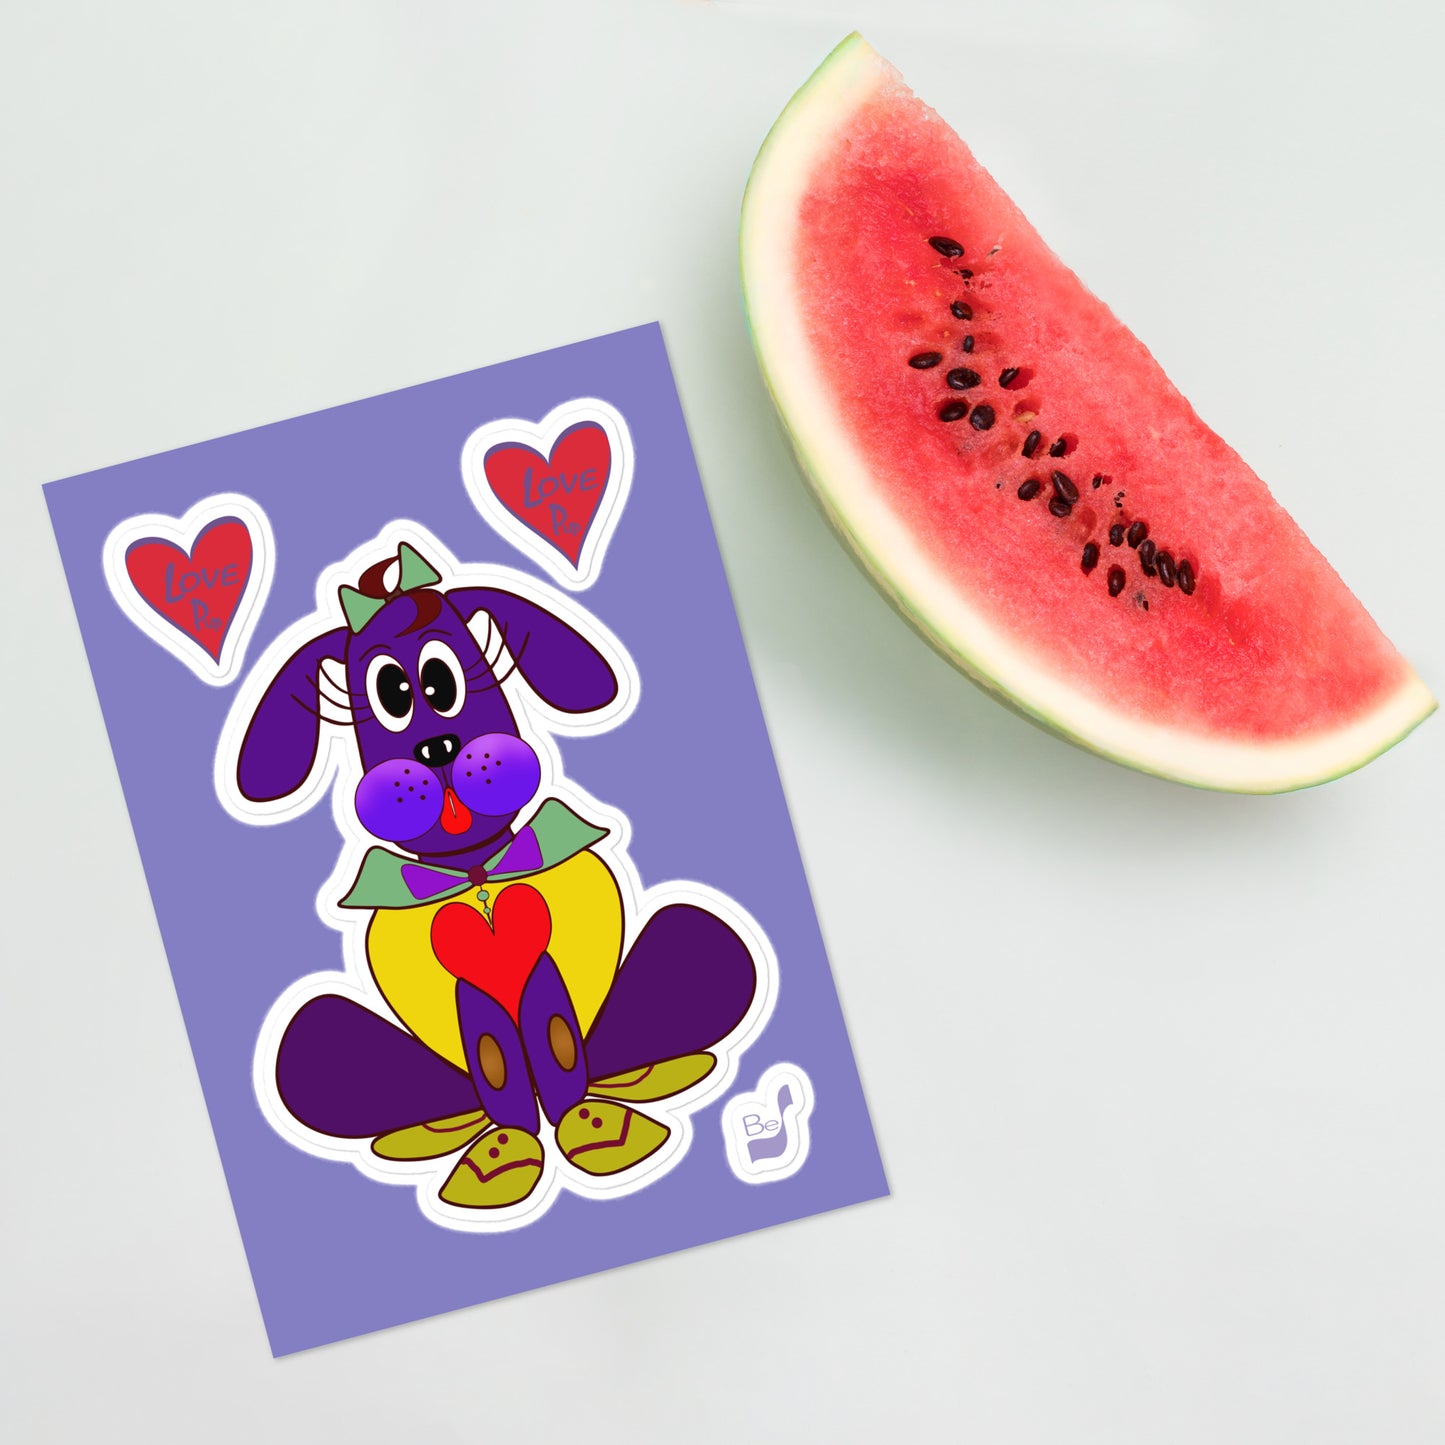 Love Pup 5 Cherry BeSculpt Stickers Sheet